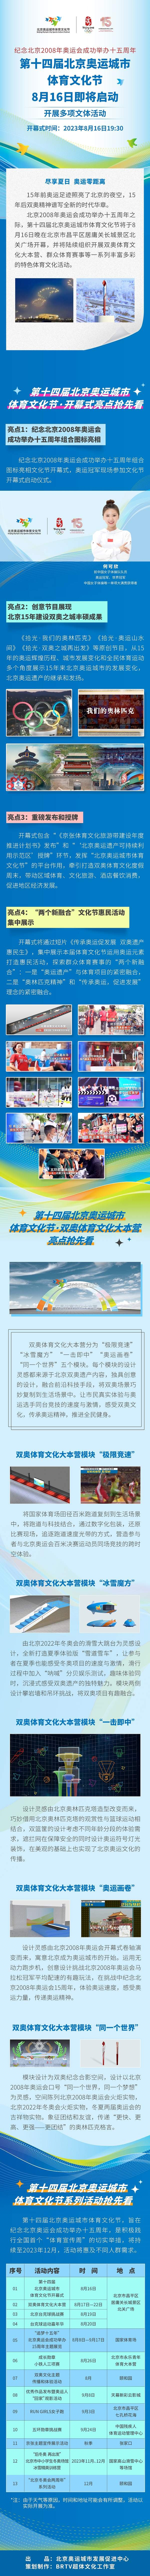 第十四屆北京奧運城市體育文化節將於8月16日啟動.jpg